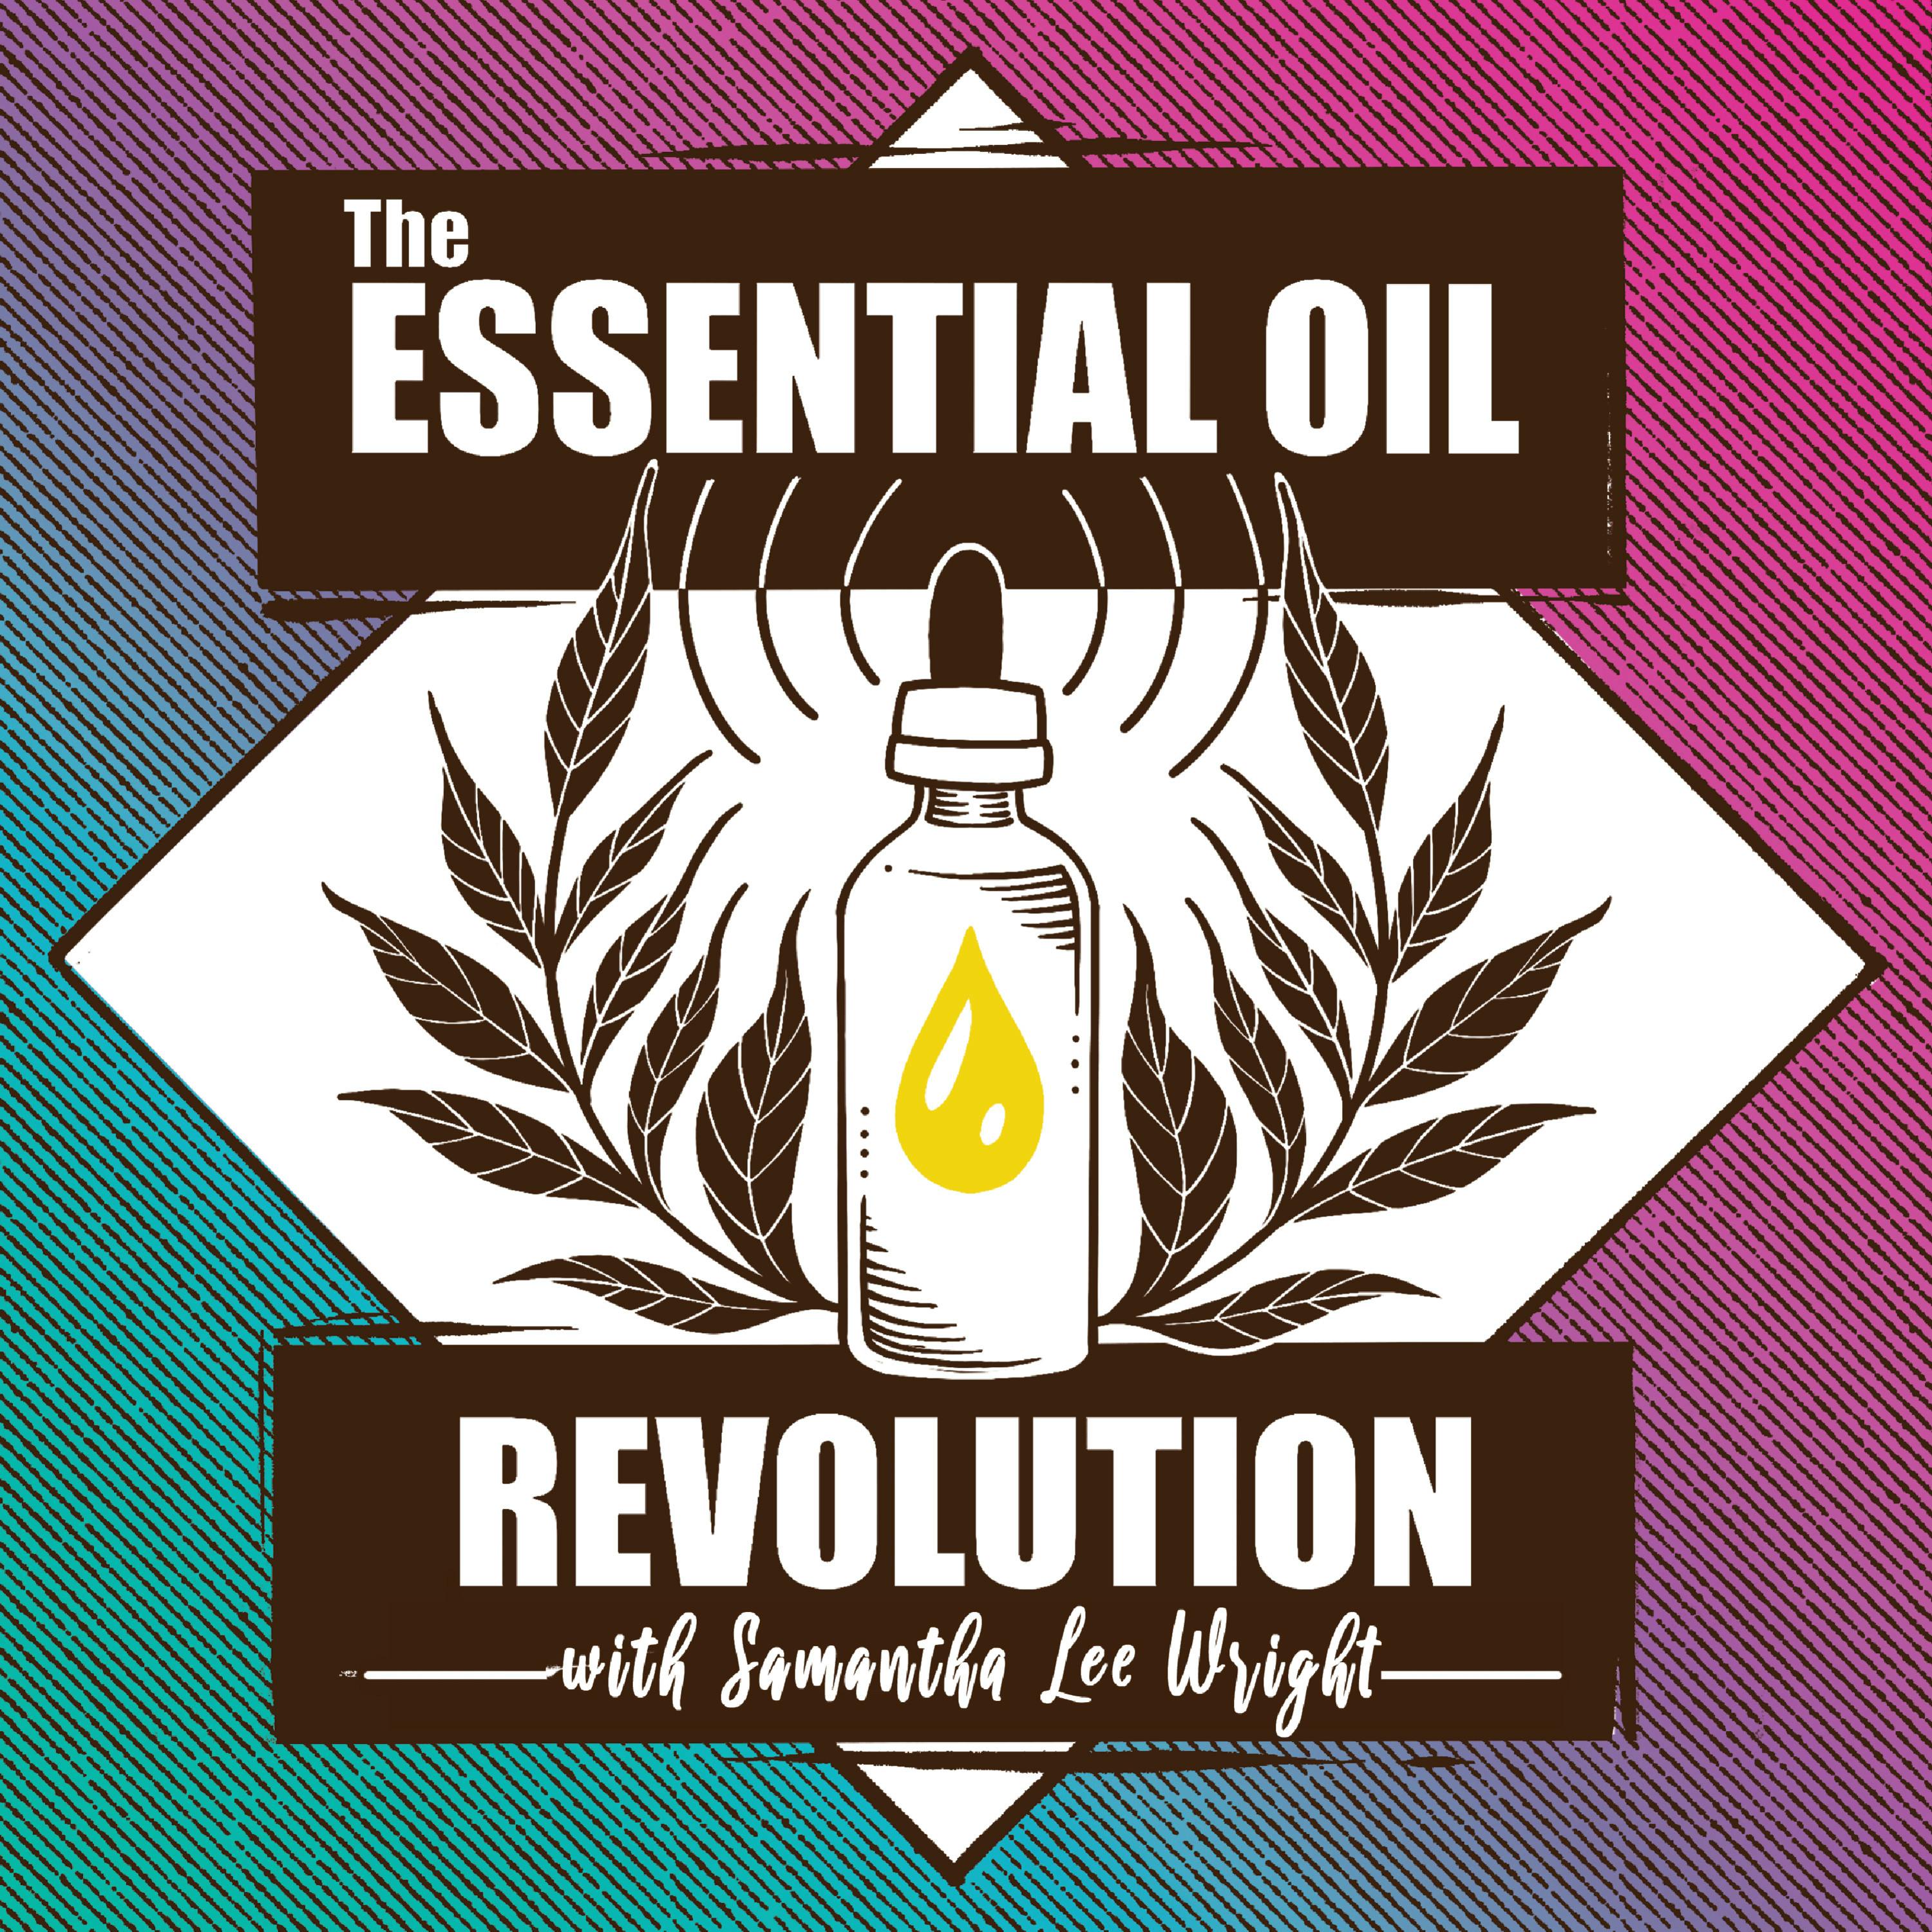 (Encore) Essential Oils for Veterans, PTSD, Trauma, and Neglect